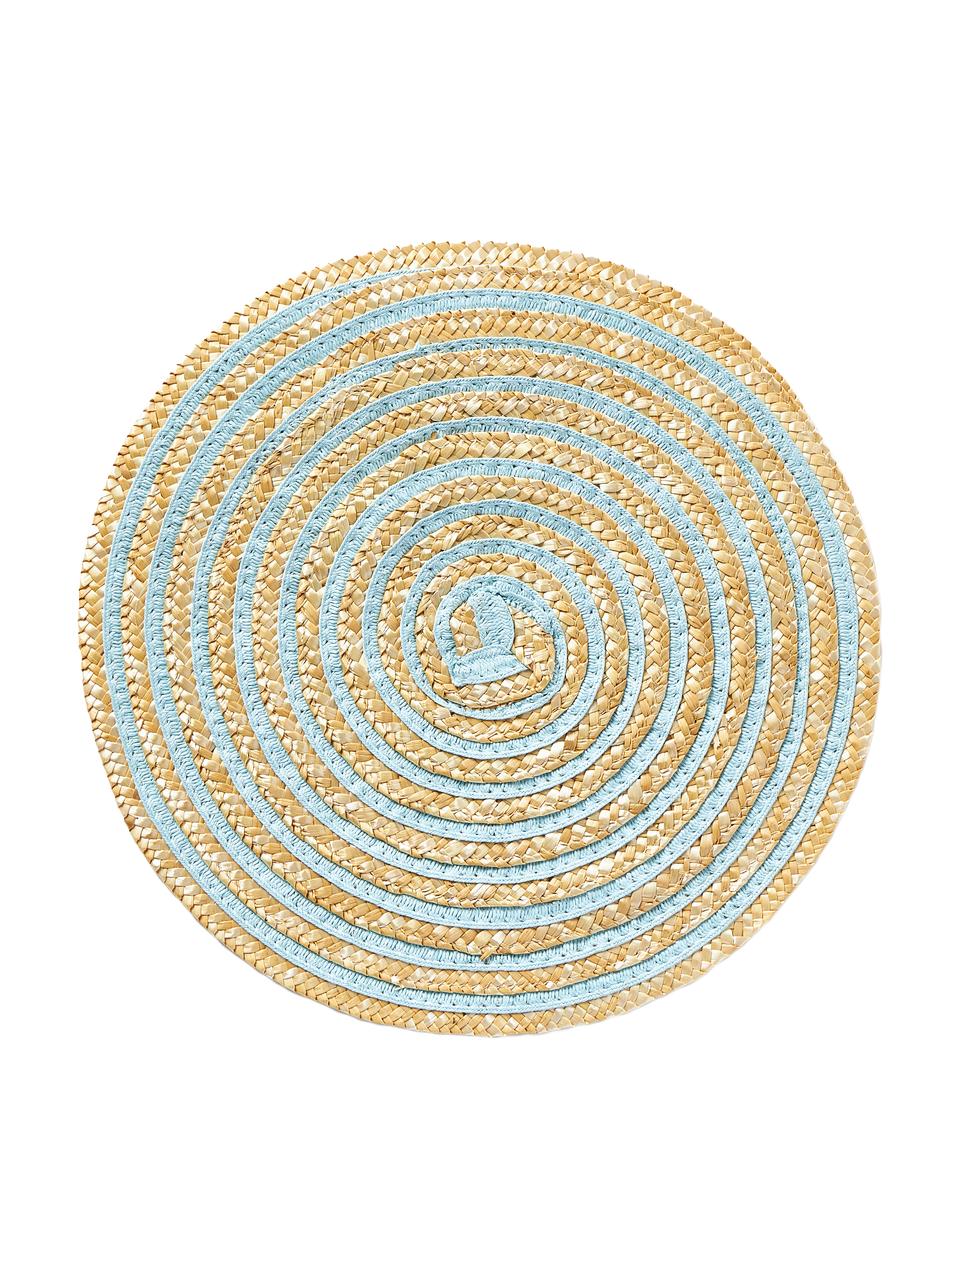 Ronde placemats Baita van bast, 6-delig, Bastvezels, Beige, blauw- en groentinten, Ø 39 cm